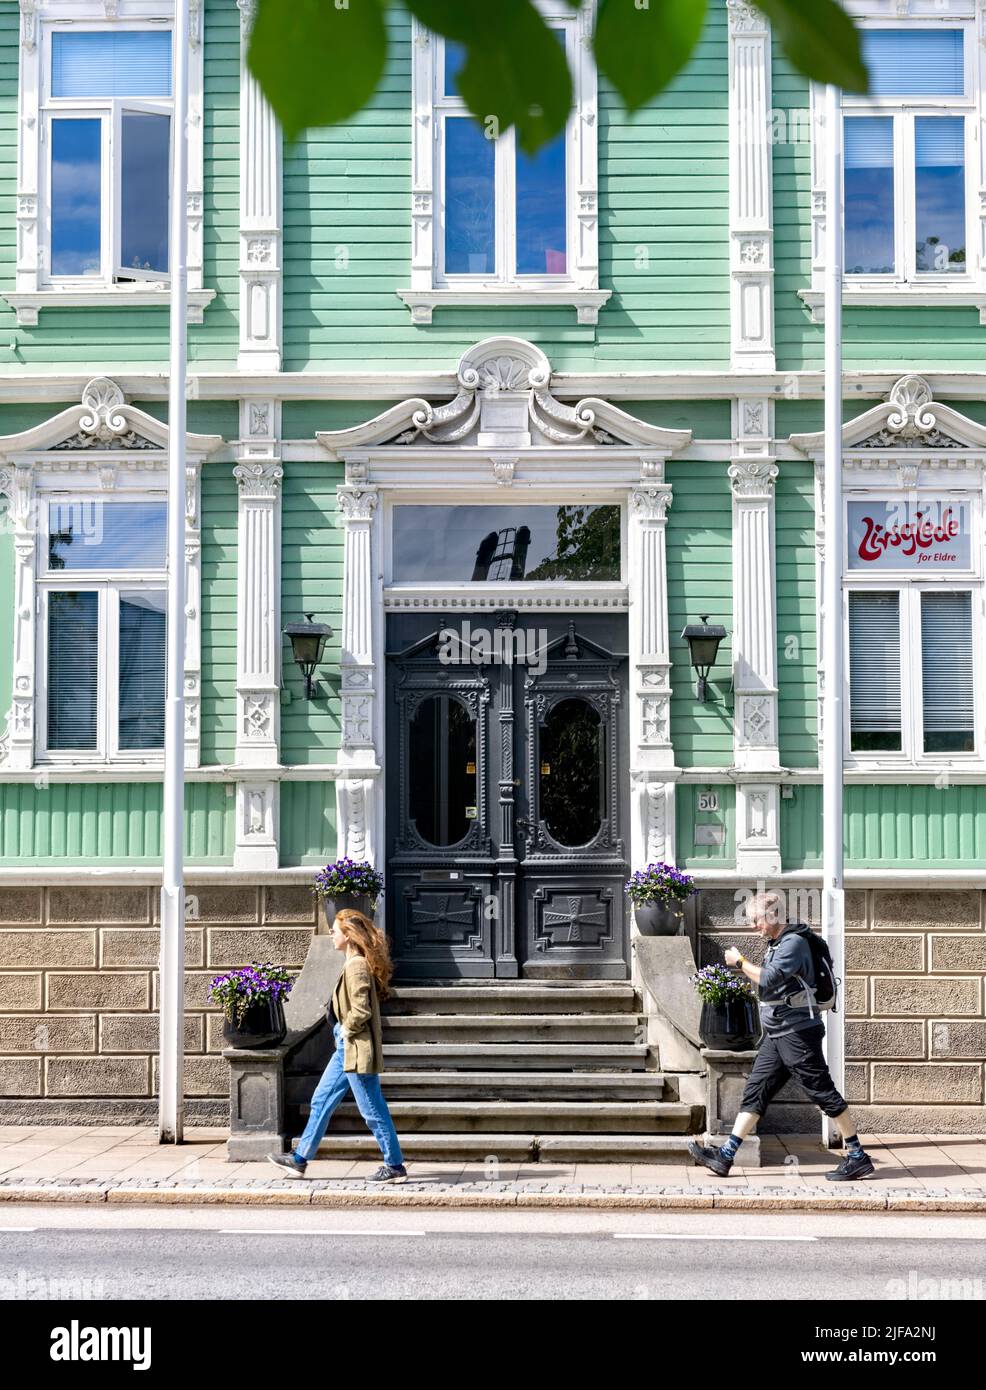 Persone che camminano accanto al verde chiaro e bianco edificio in legno FRU Lundgreen Bar, Trondheim, Norvegia Foto Stock